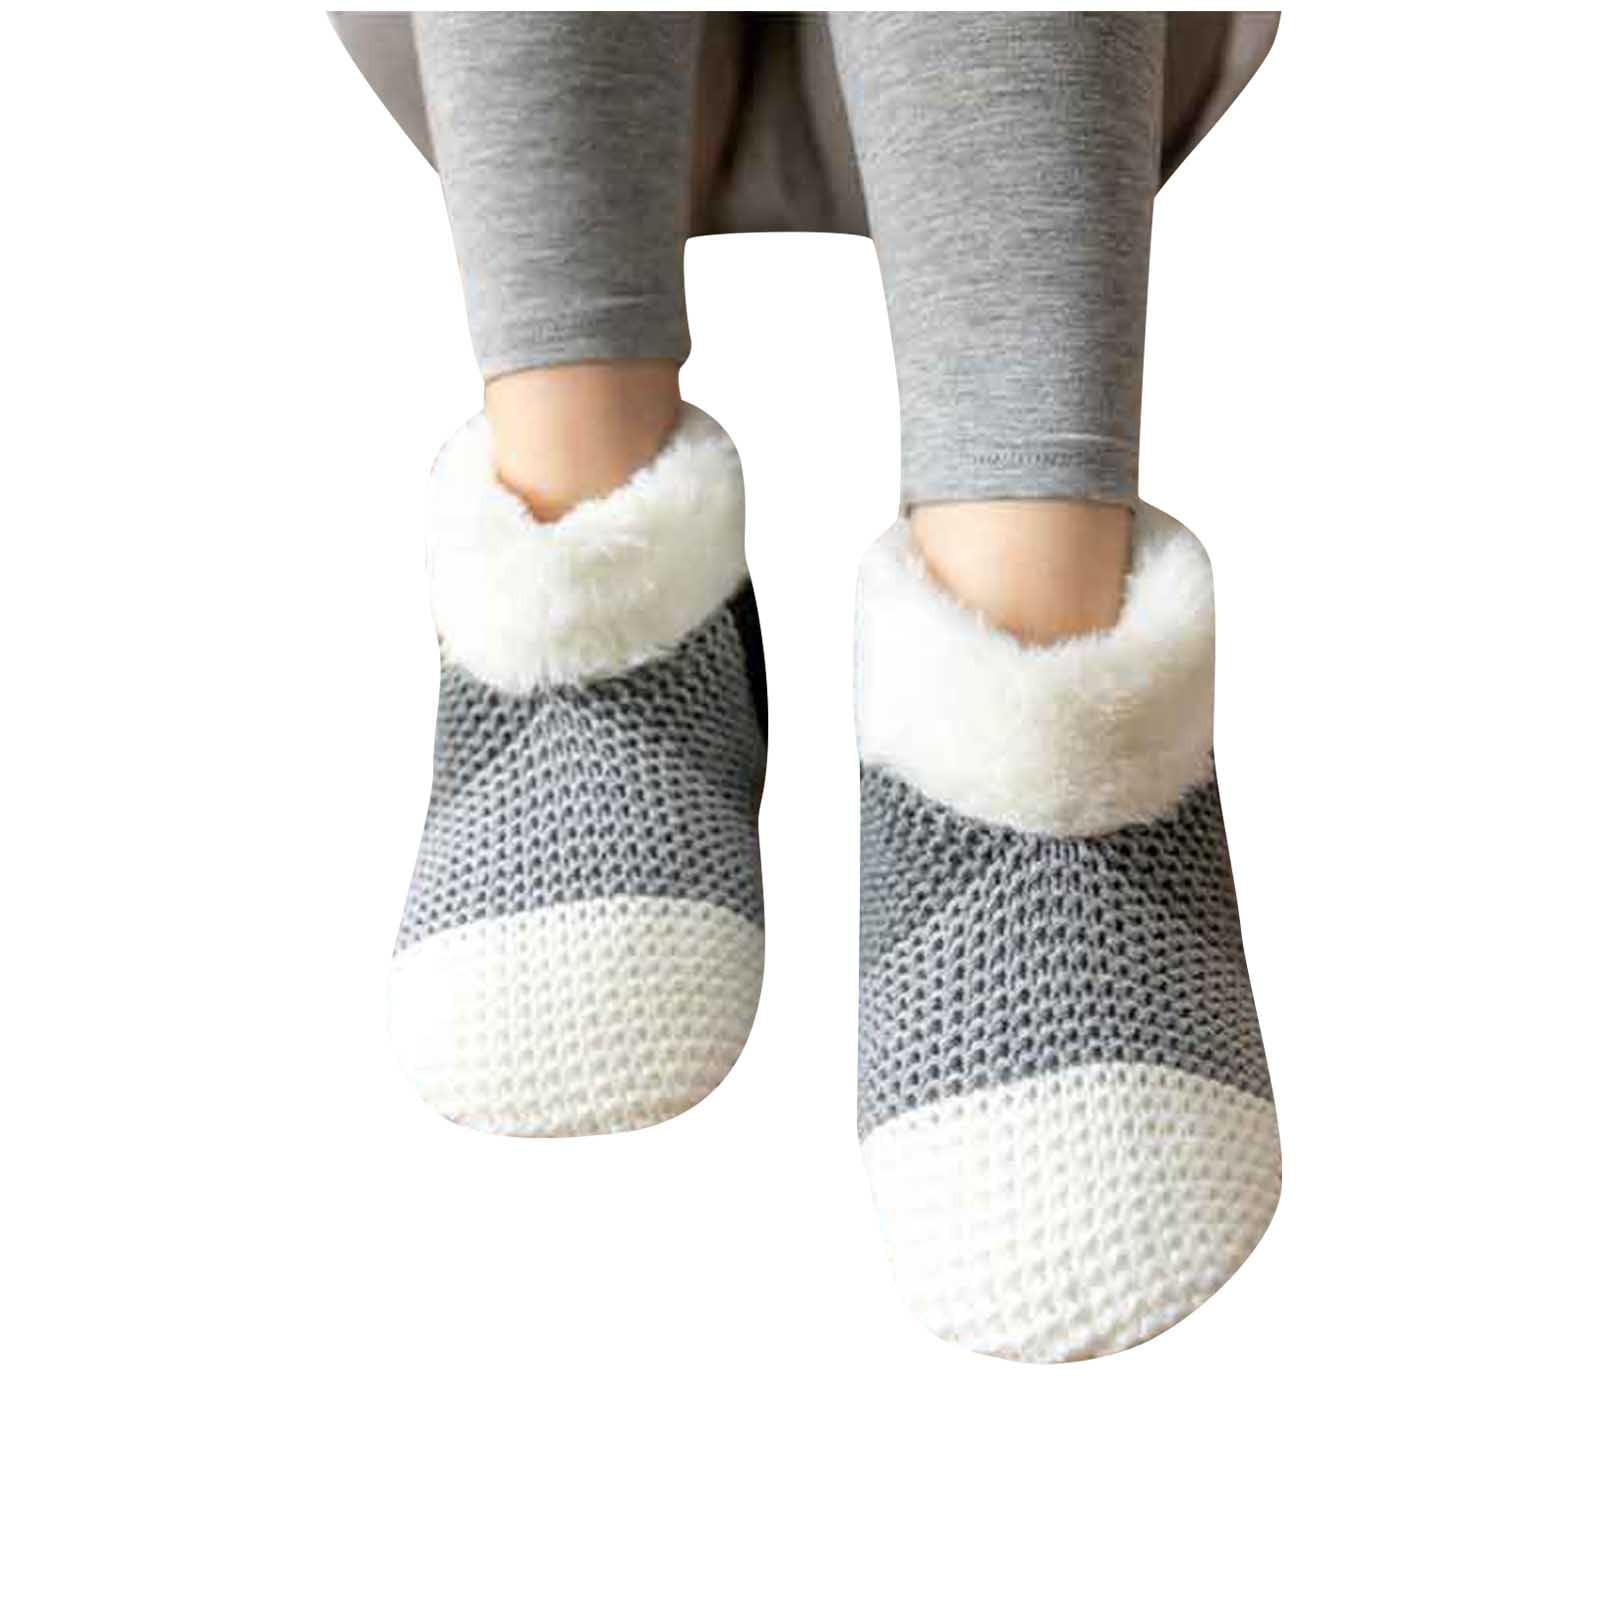 APEXFWDT Warm and Cozy Women's Slipper Socks with Soft Fuzzy Lining ...